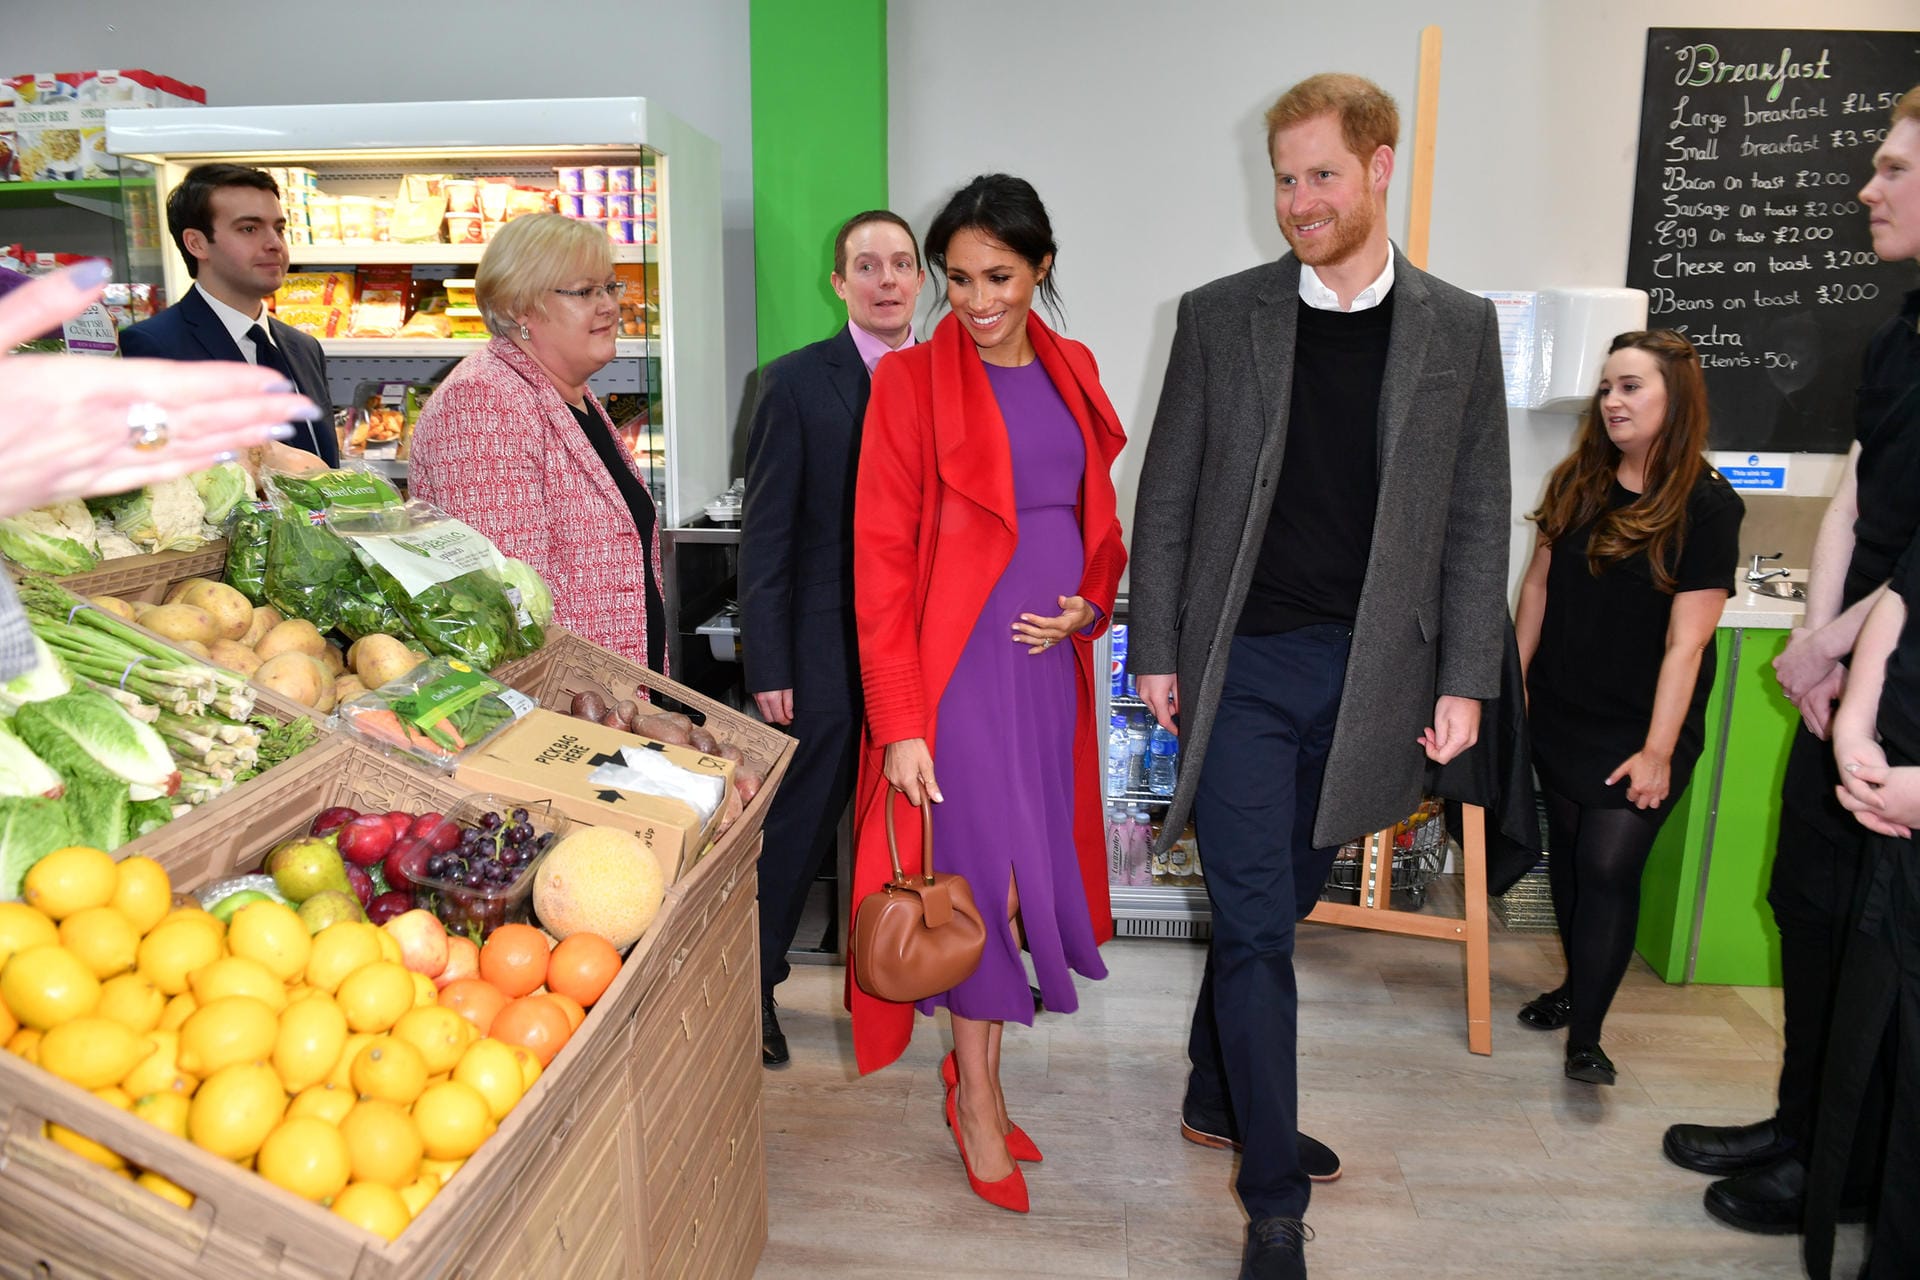 In Birkenhead besuchten die Royals mehrere lokale Organisationen, darunter auch einen Supermarkt mit Community-Café.